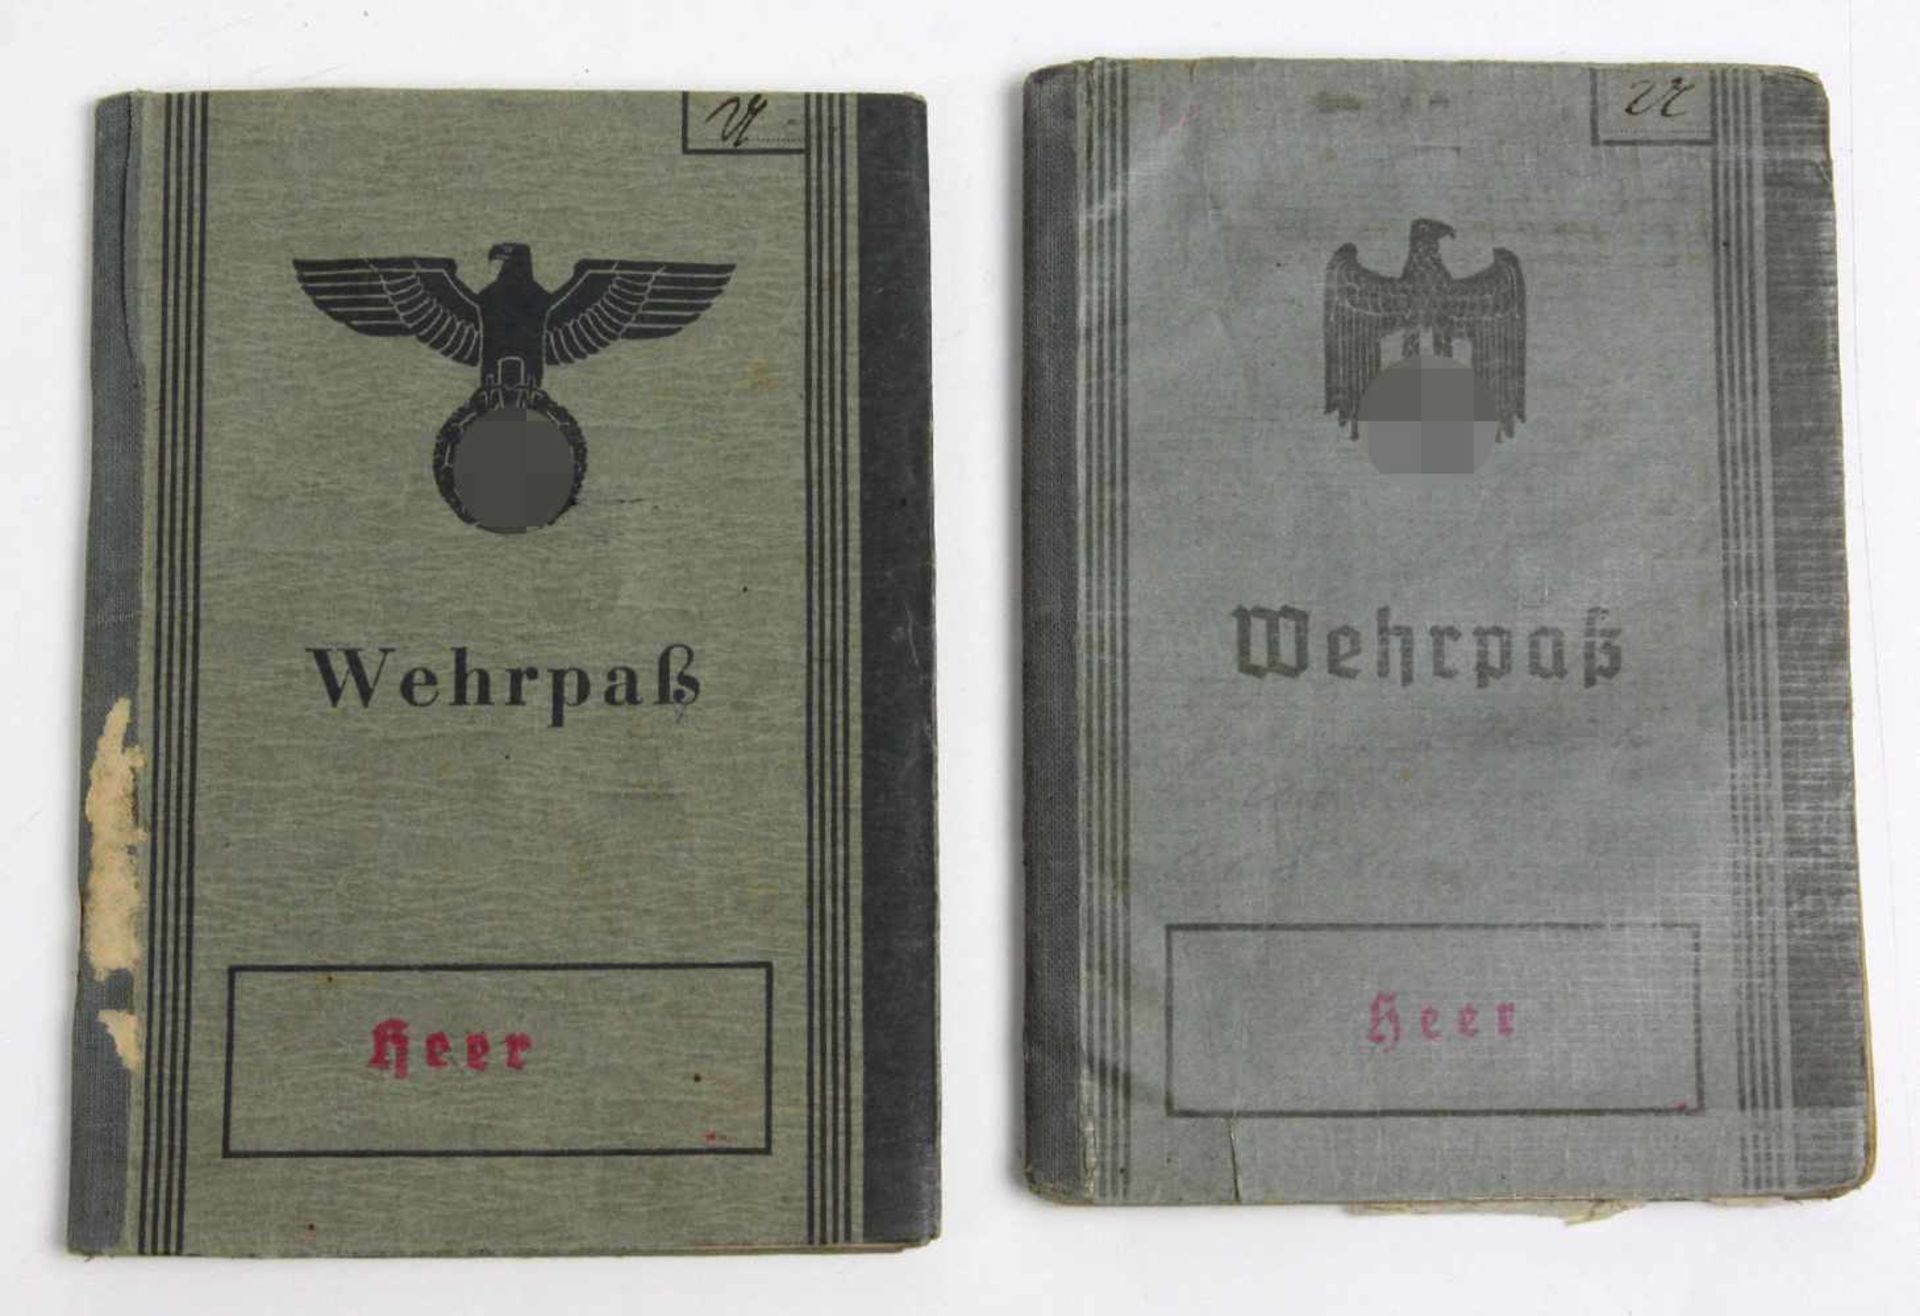 2 Heeres Wehrpässeje mit Lichtbild, ausgestellt in Chemnitz 1937 u. 1942, Vater und Sohn,